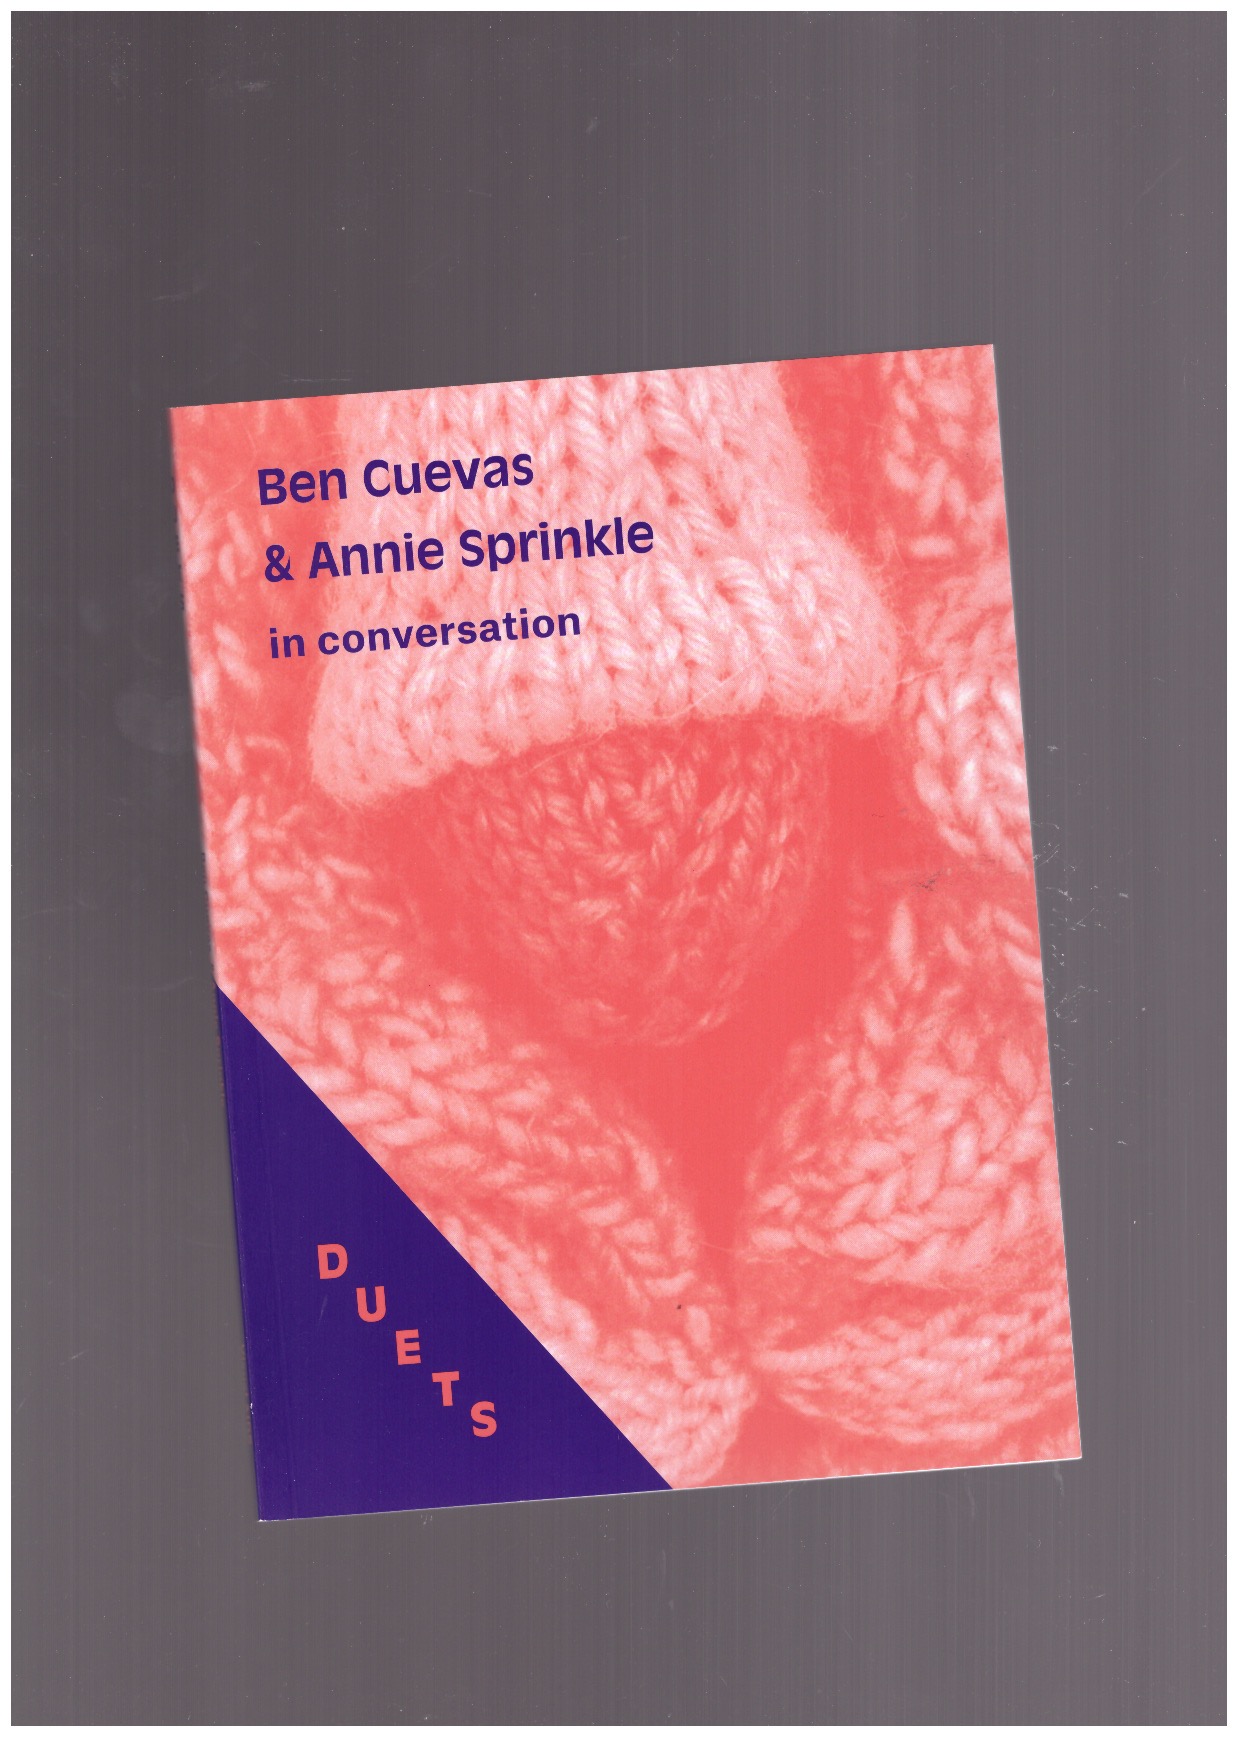 CUEVAS, Ben; SPRINKLE, Annie - Duets: Ben Cuevas & Annie Sprinkle in conversation